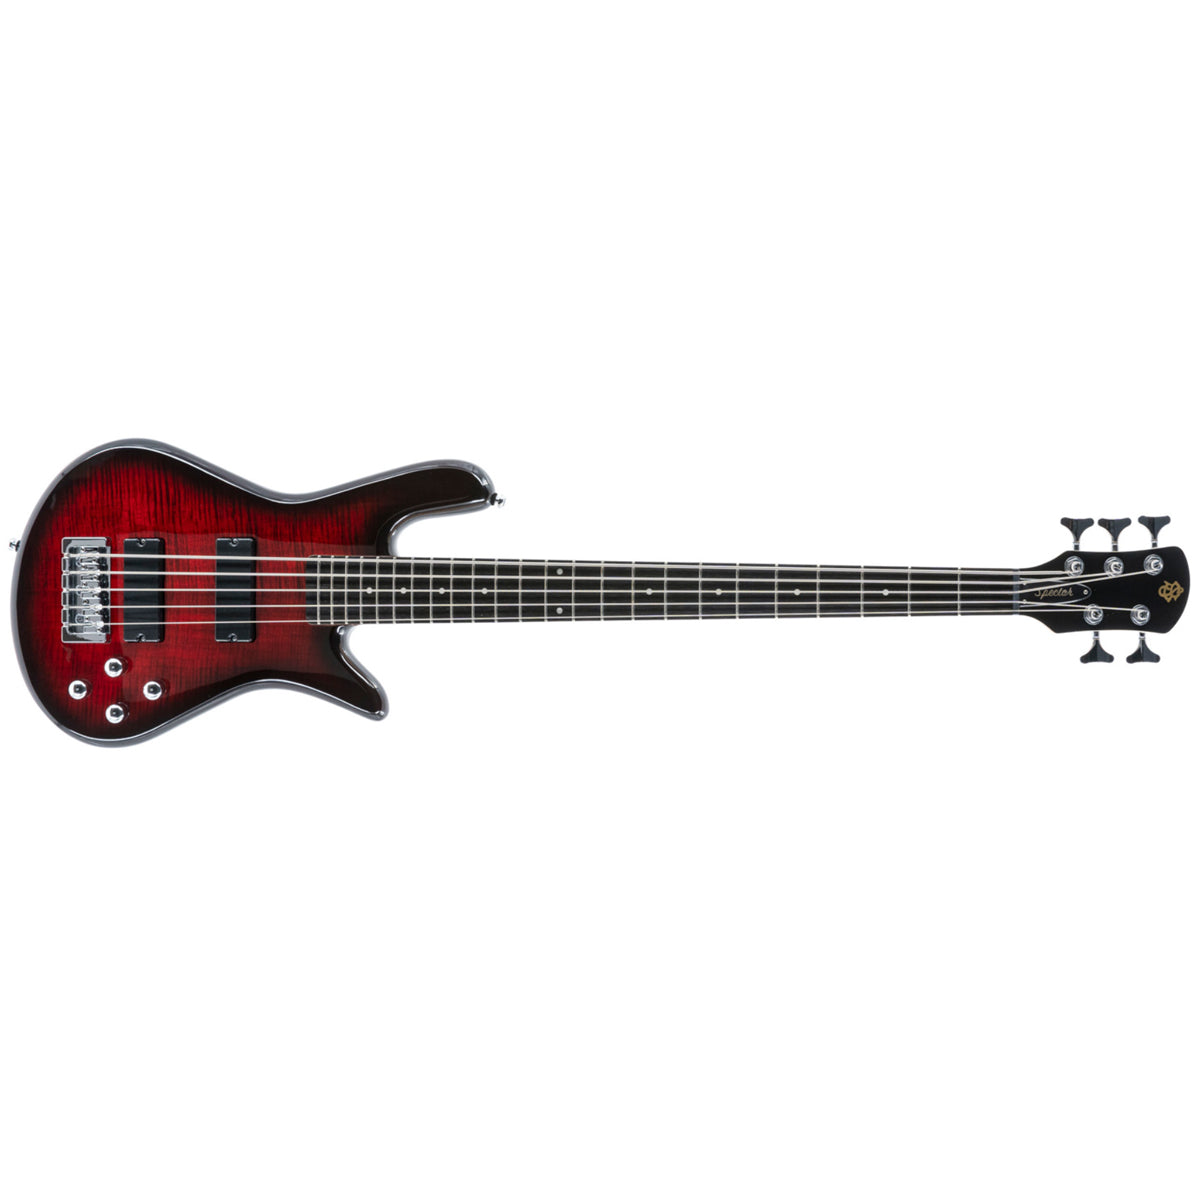 Spector Legend 5 Standard Bass Guitar 5-String Black Cherry Gloss - LG5STBC